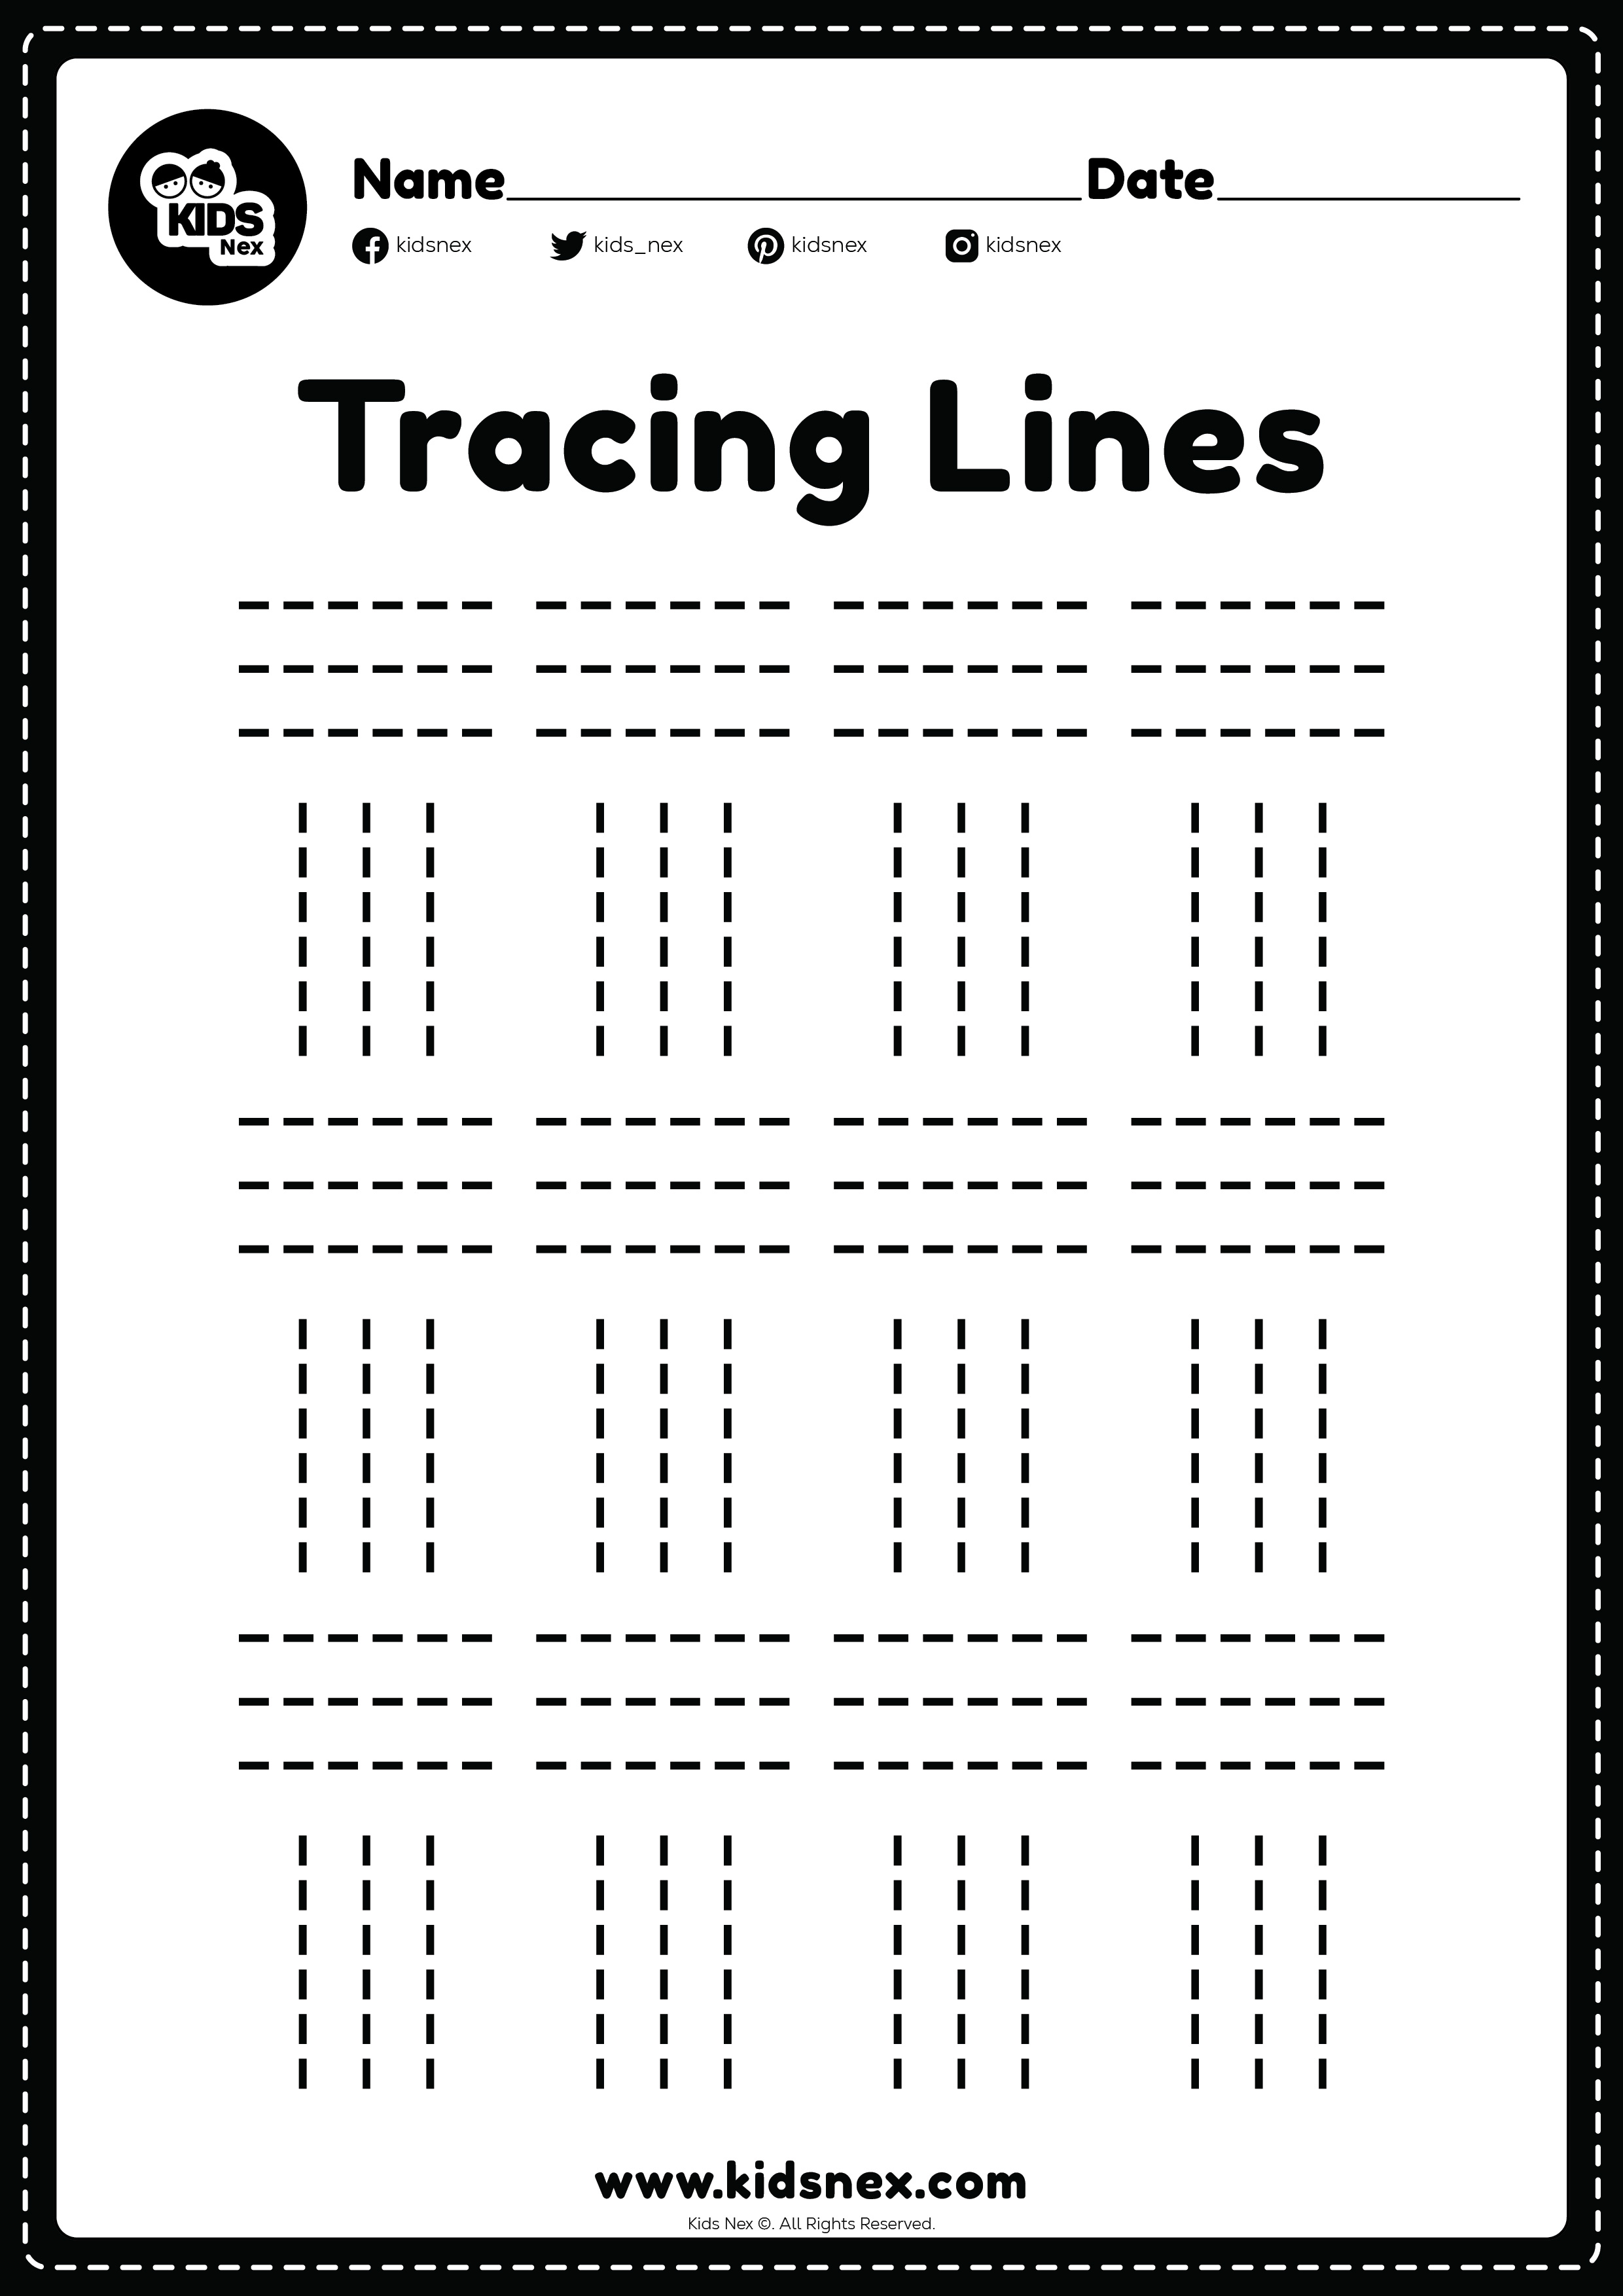 Tracing lines preschool worksheet for kindergarten kids